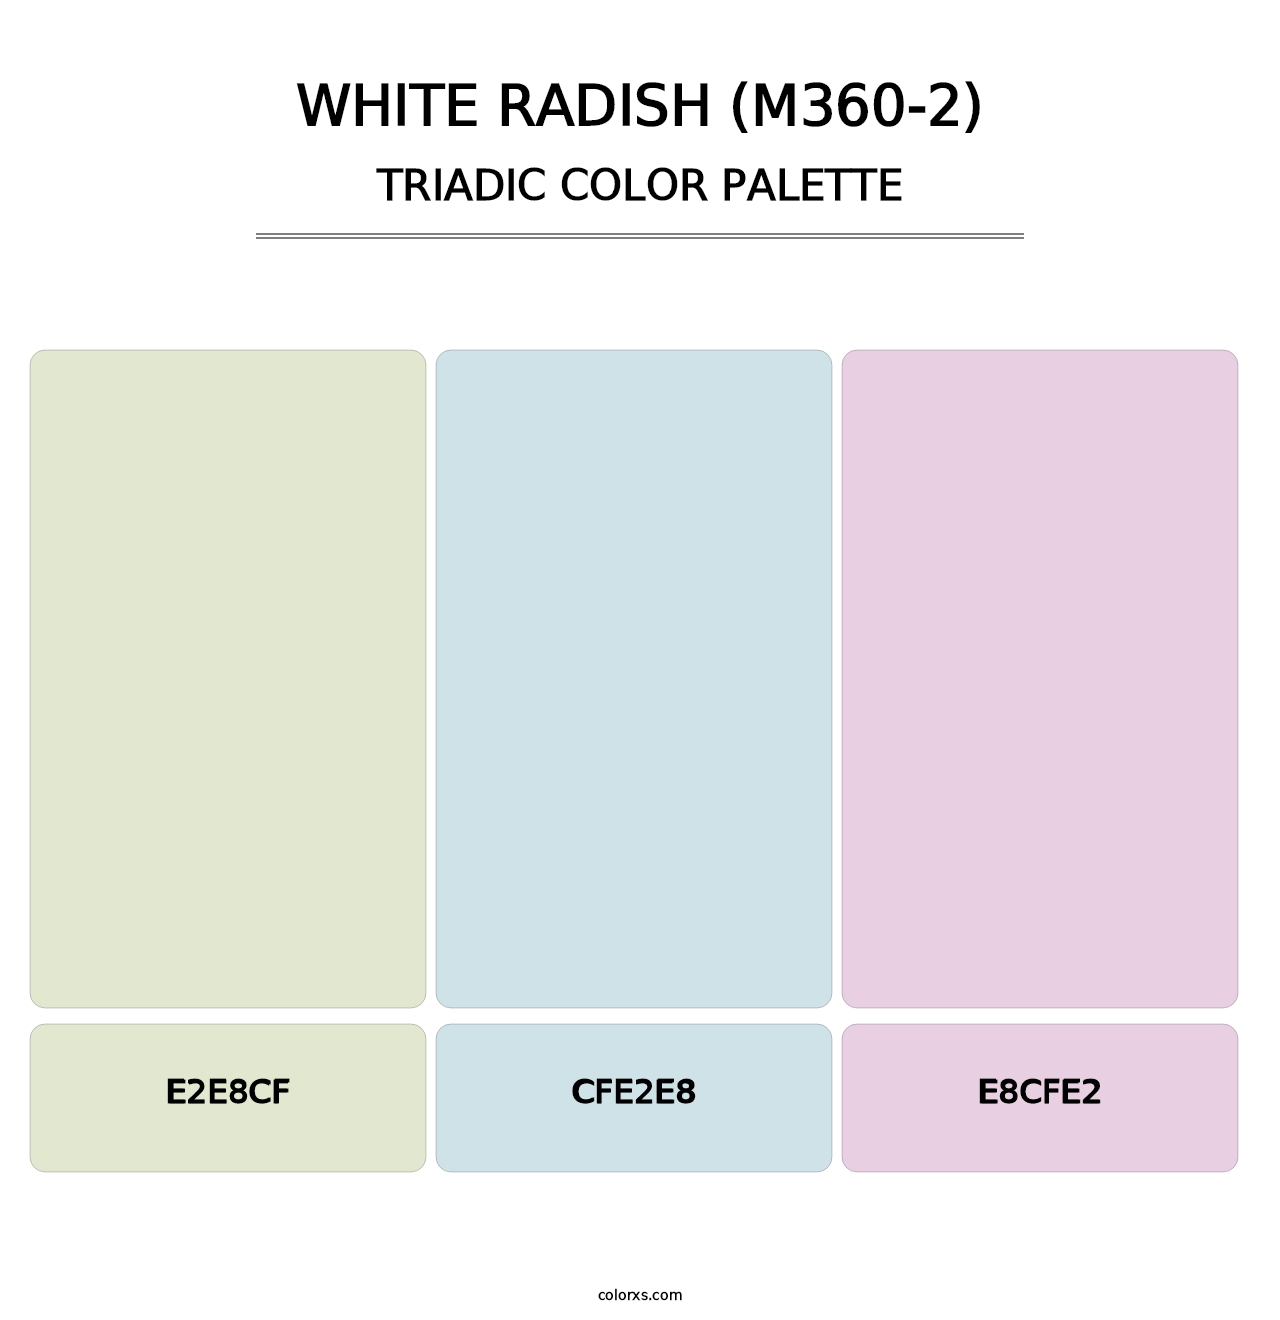 White Radish (M360-2) - Triadic Color Palette